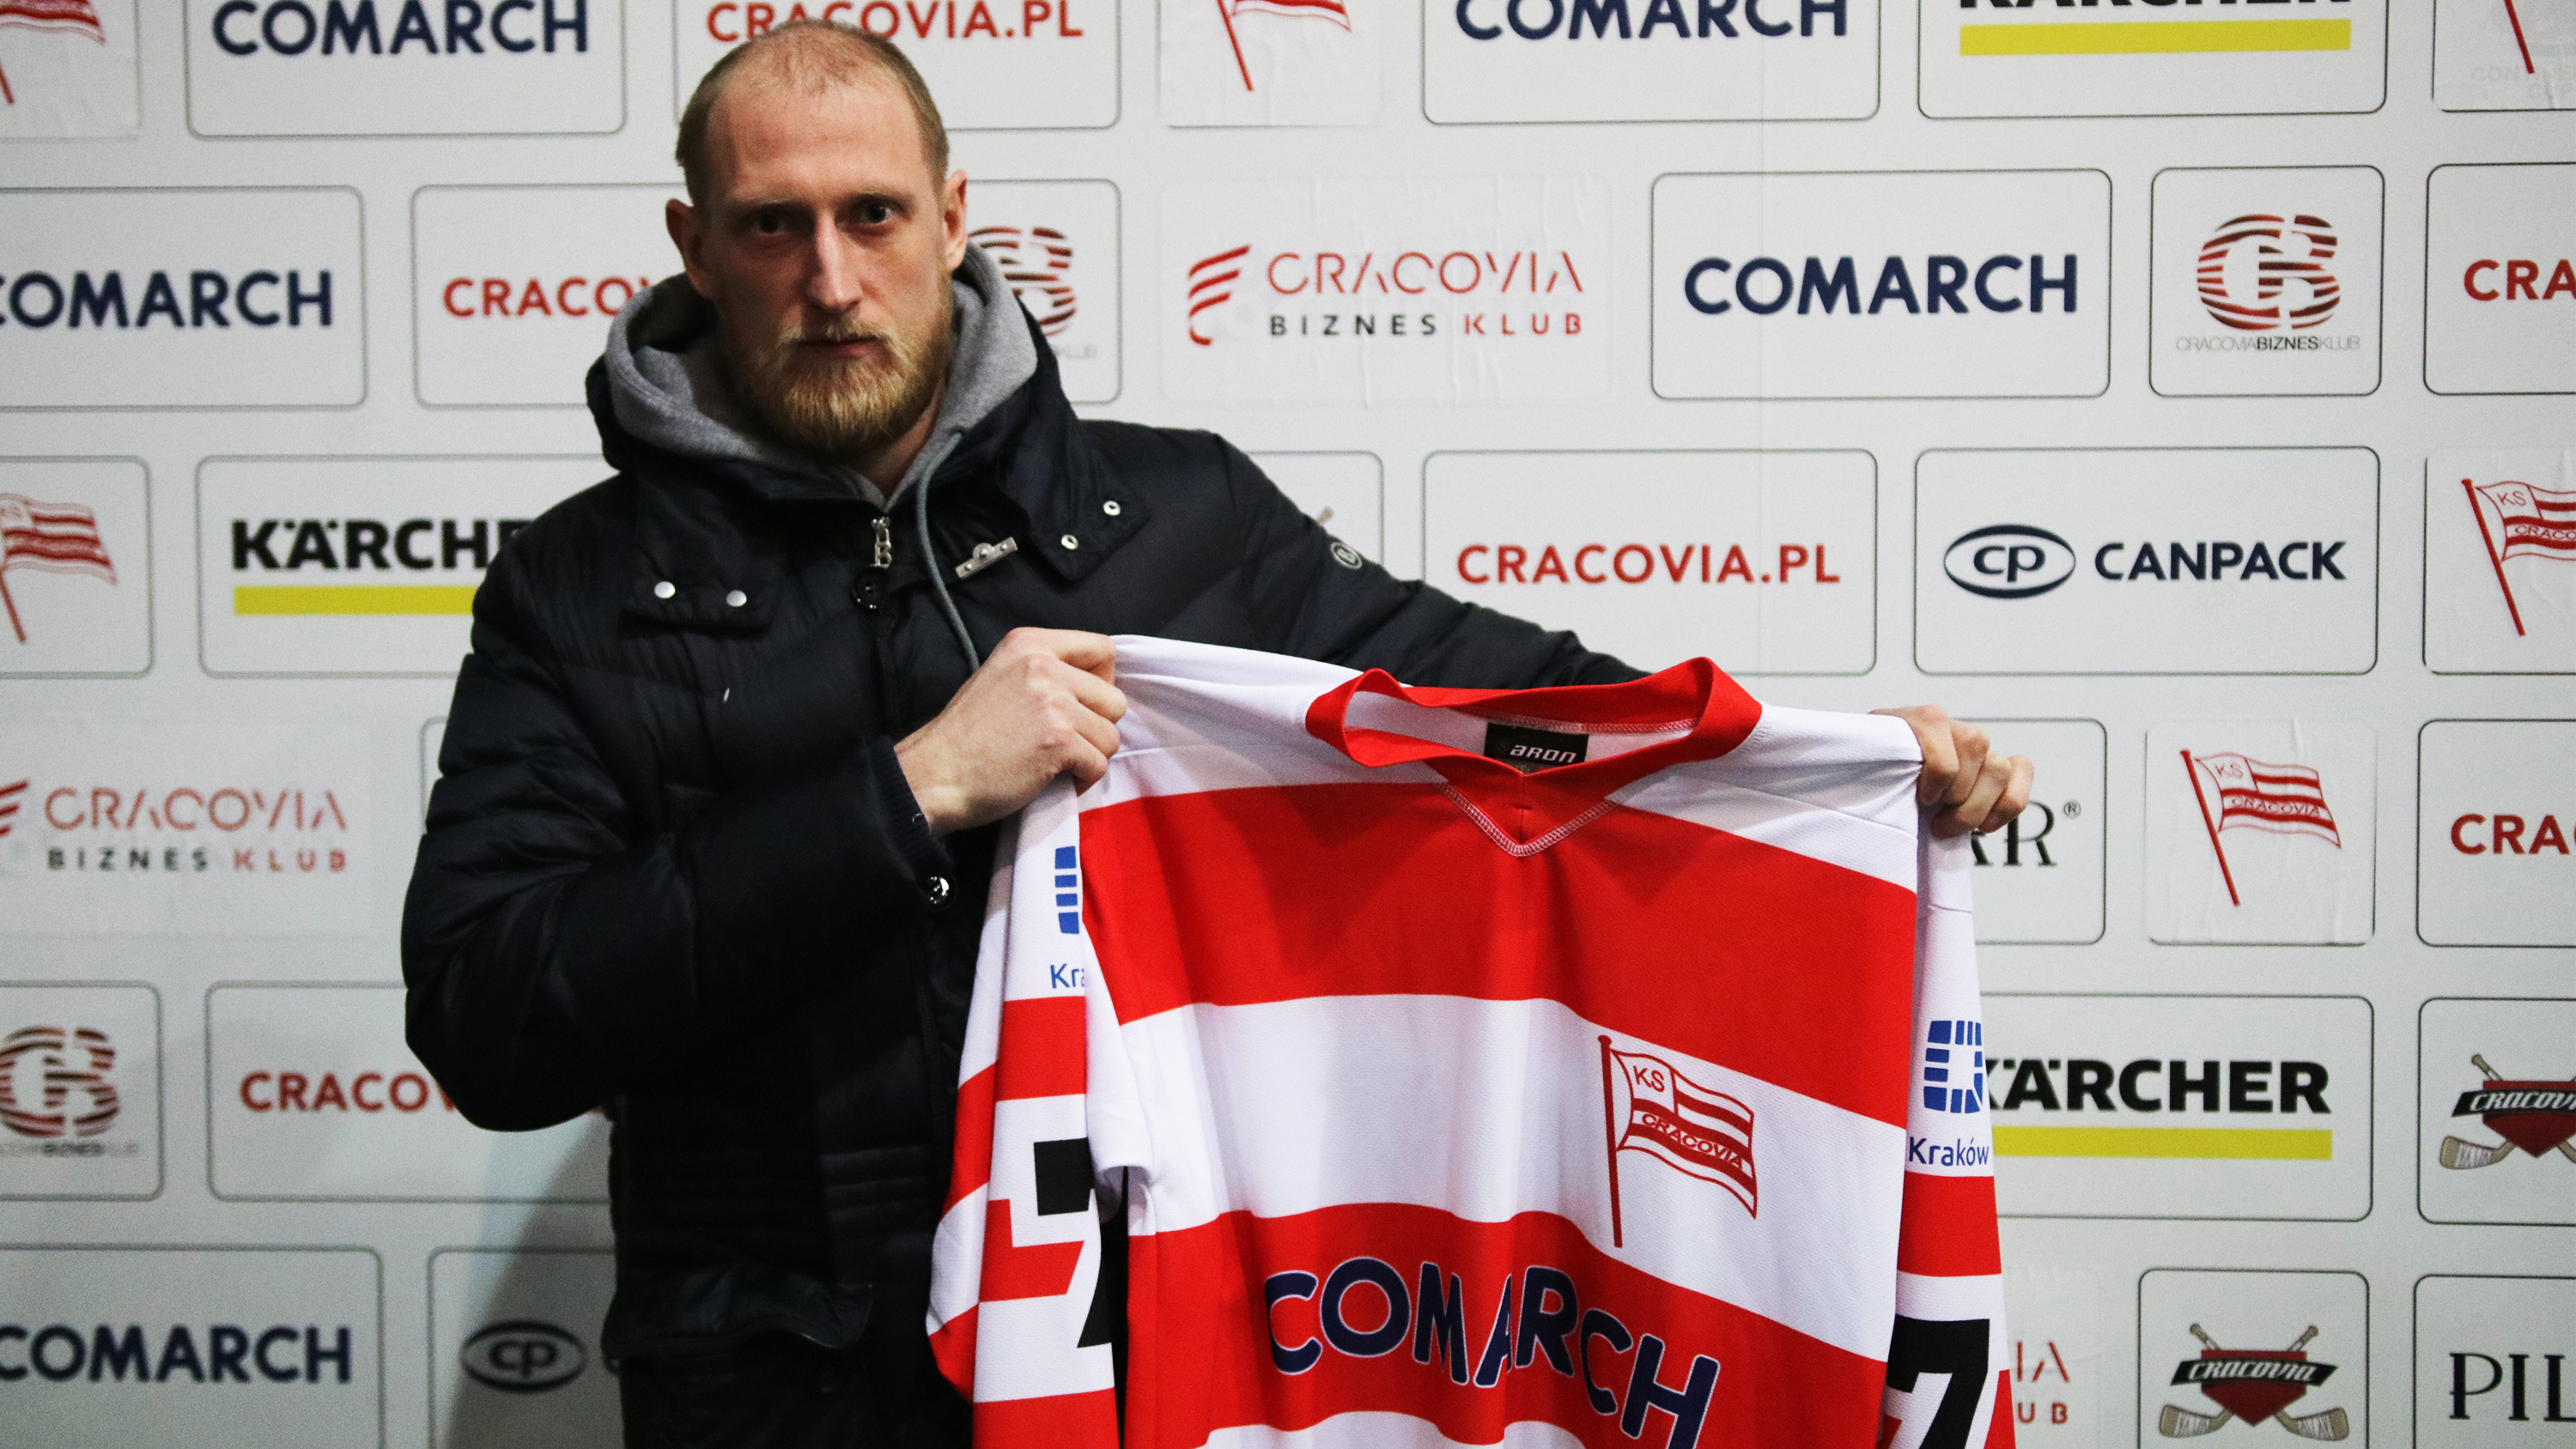 Maxim Ignatovich signs for Cracovia!